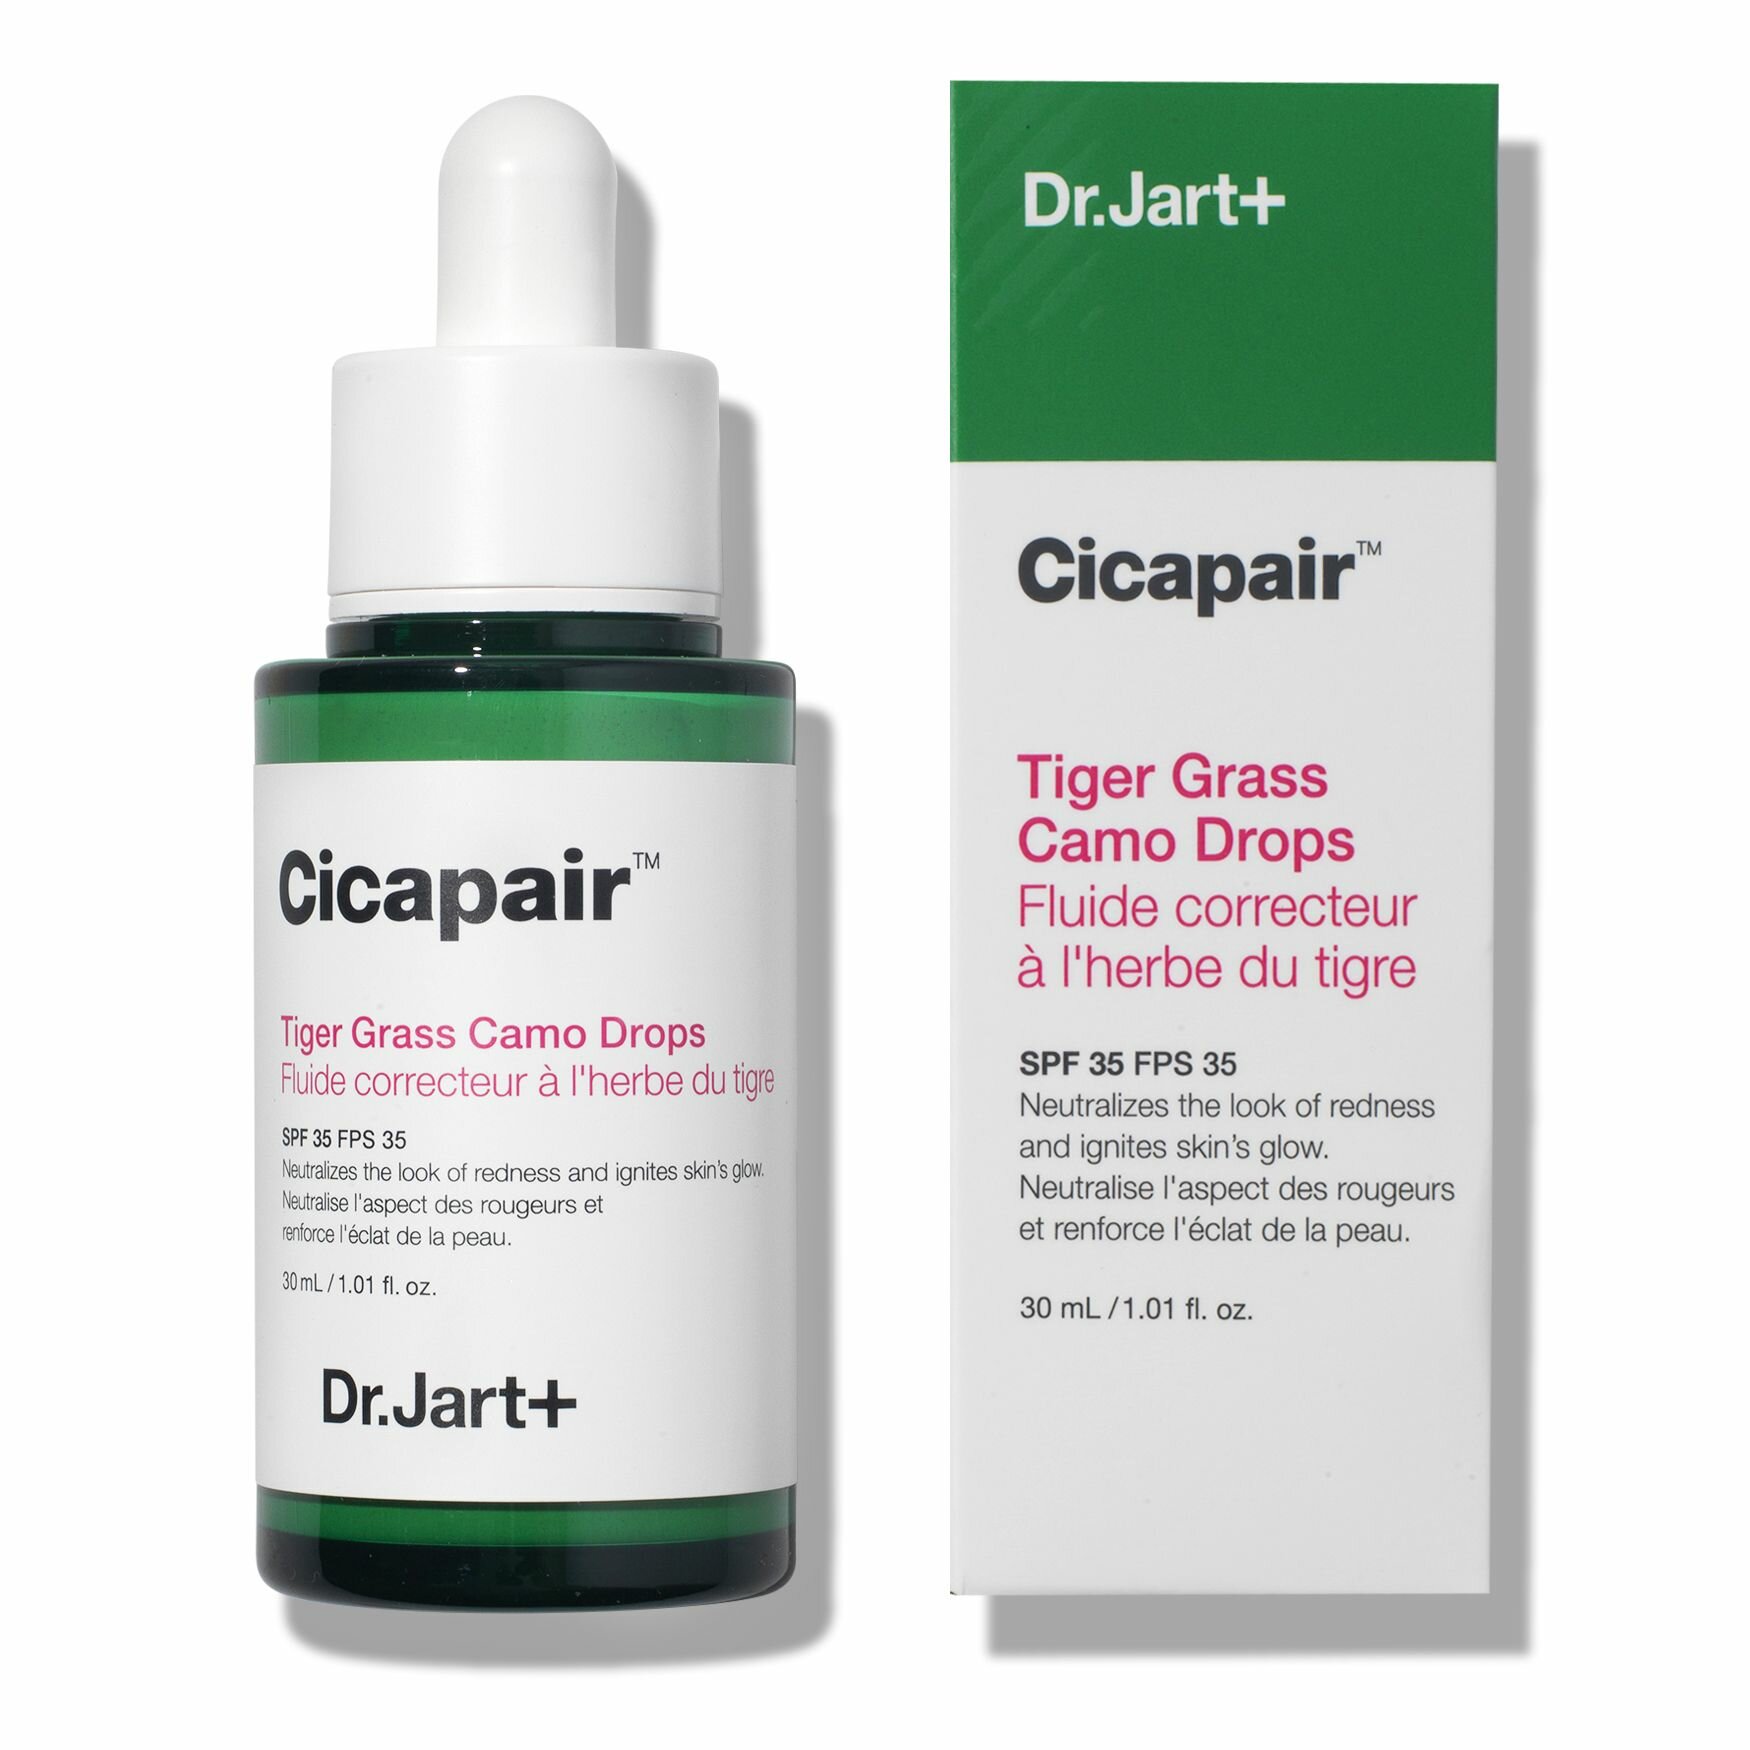 DR. JART+ Восстанавливающая сыворотка, корректирующая цвет лица Cicapair Tiger Grass Camo Drops SPF 35